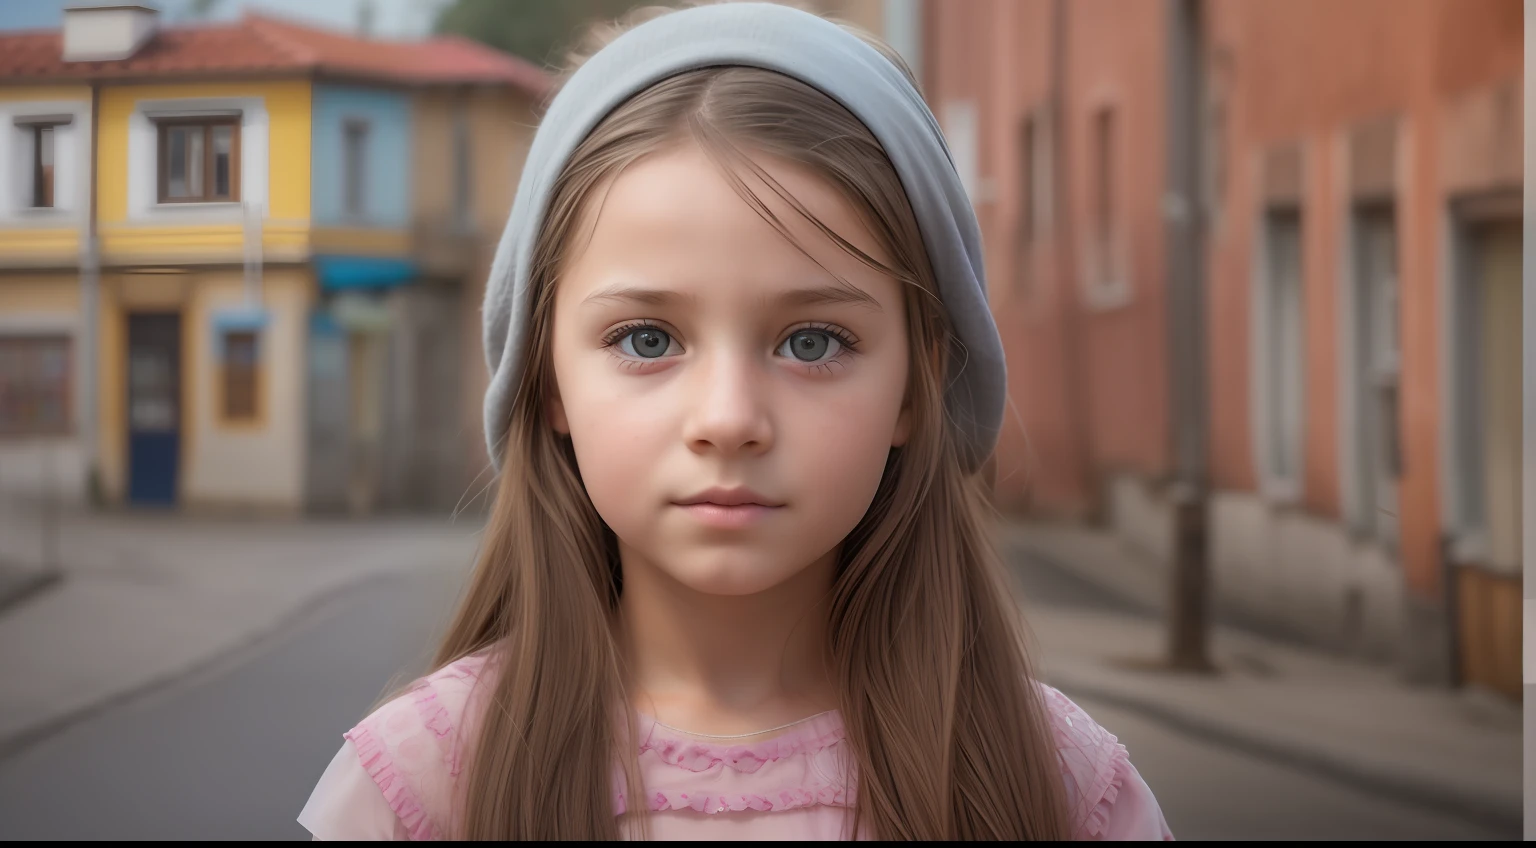 "Создайте гиперреалистичное изображение 10-летней девочки из Боснии с аутентичными чертами лица., на фоне реалистичного города, демонстрация лучшего качества и сложных деталей."